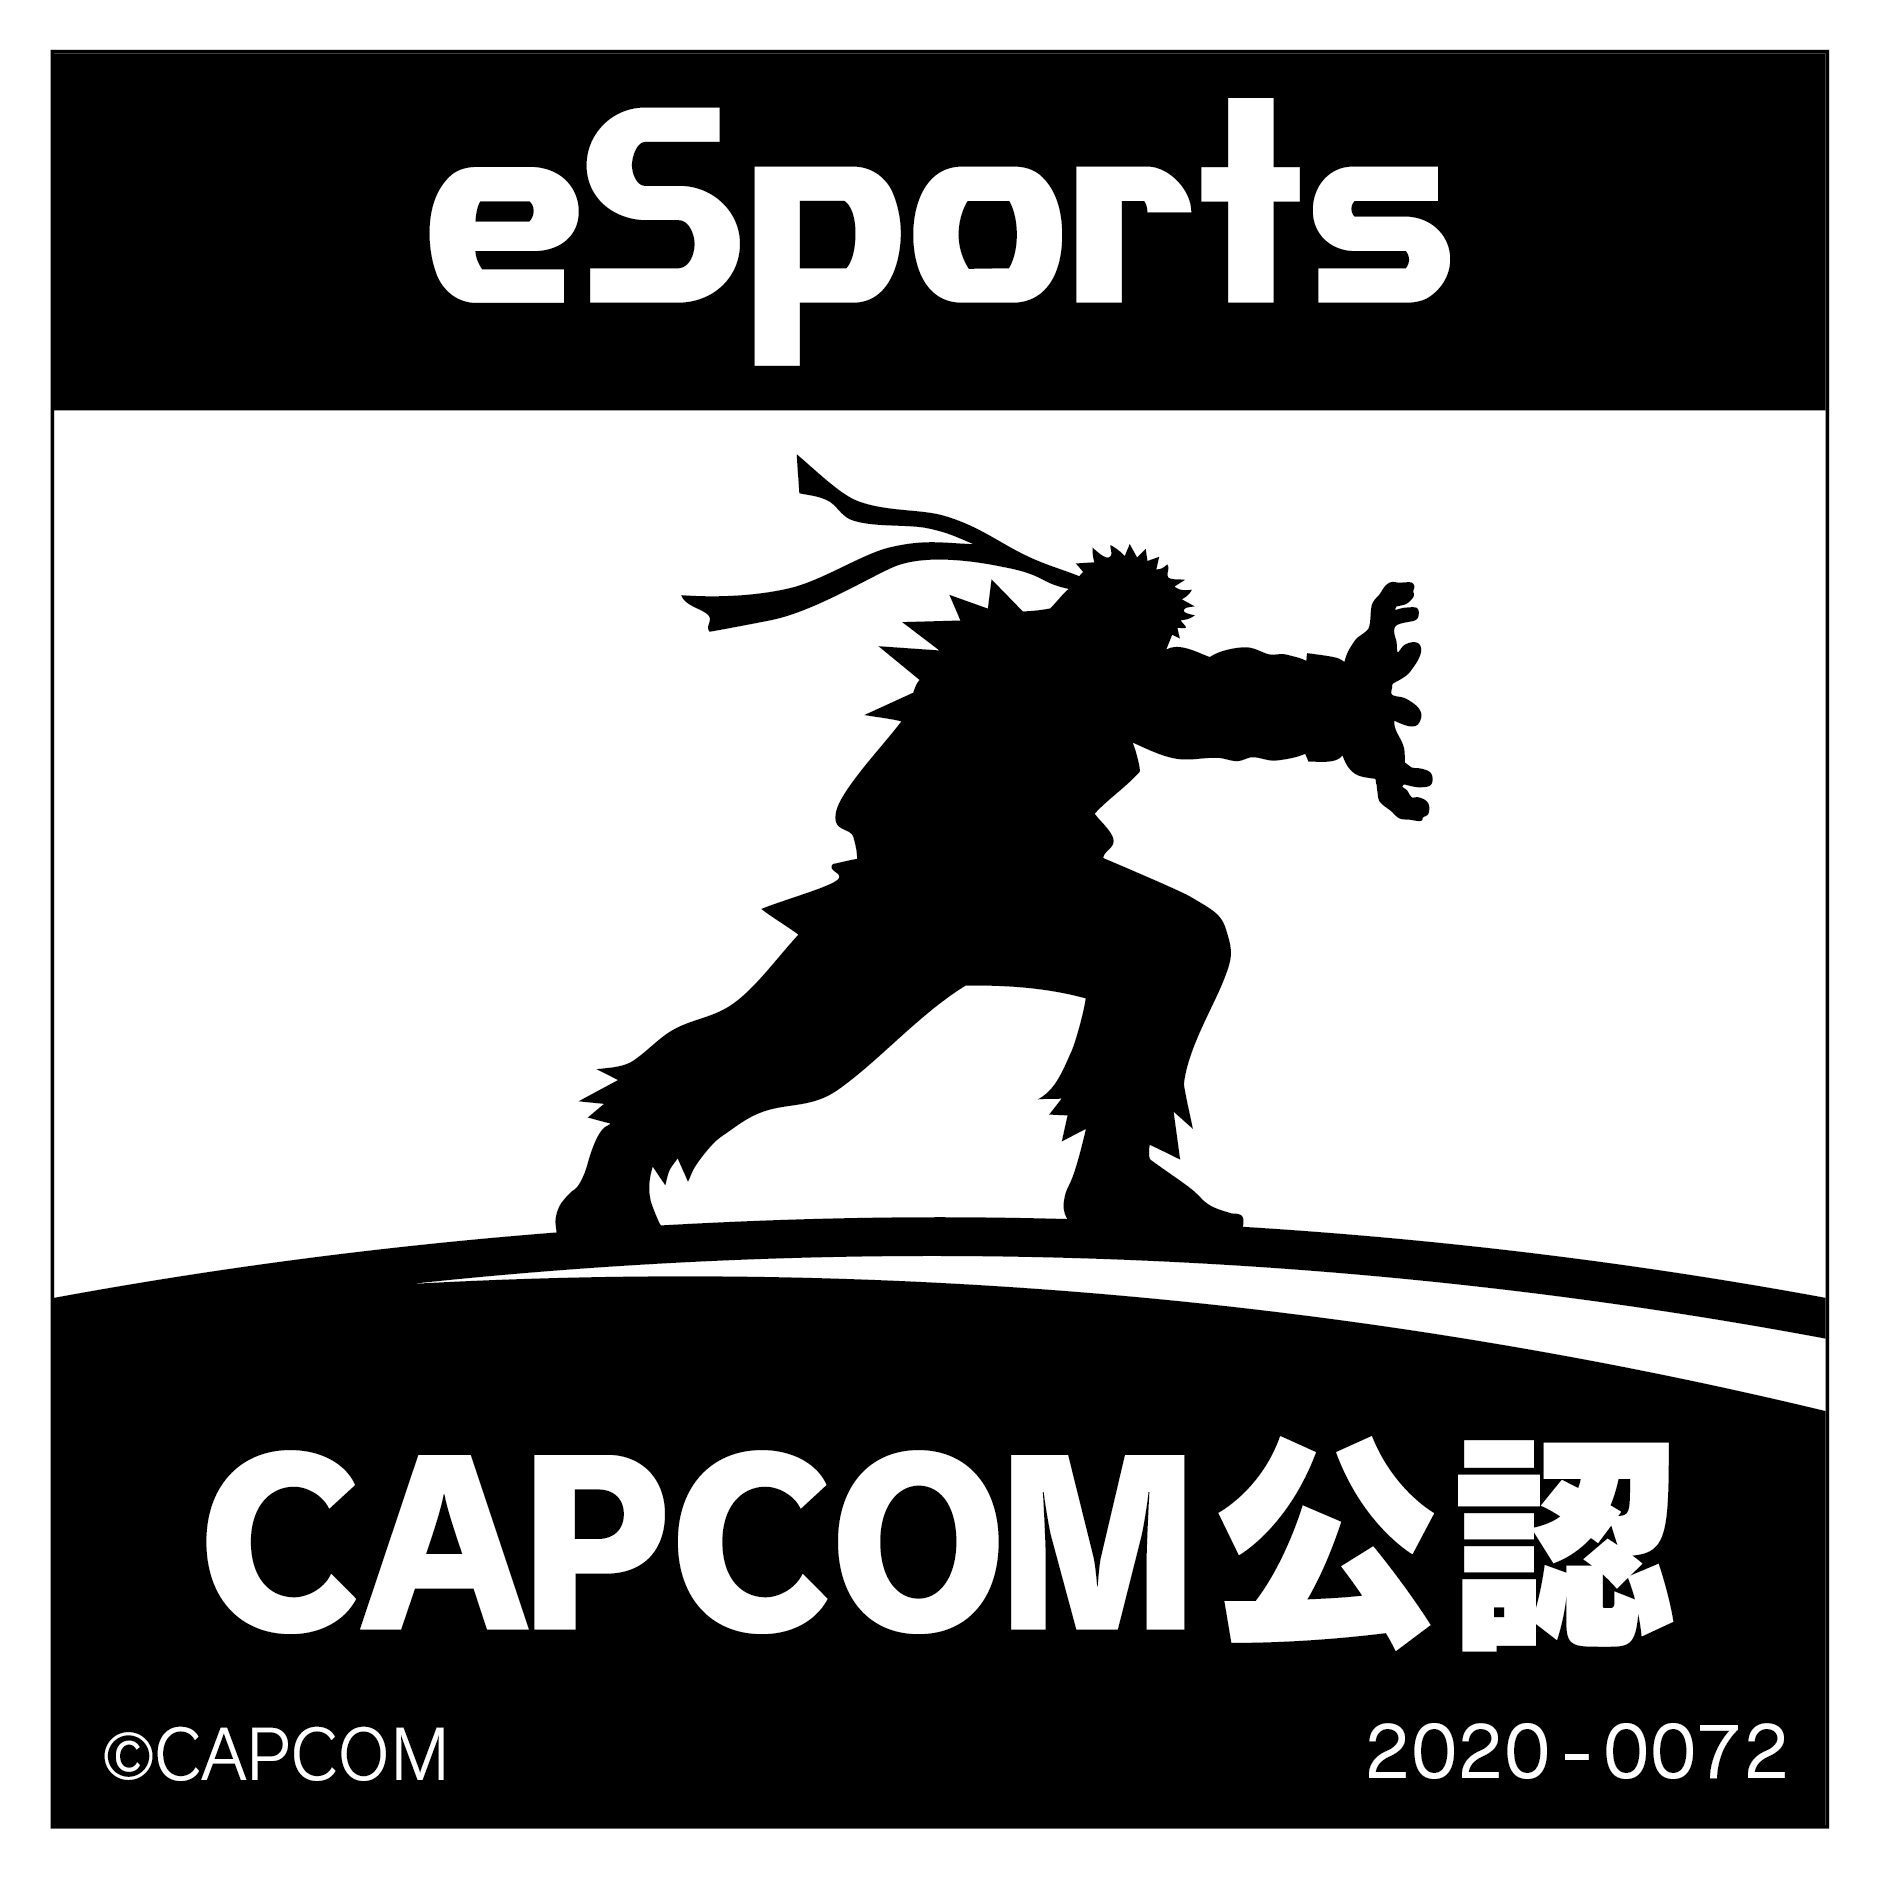 eSports CAPCOM公認 2020-0072